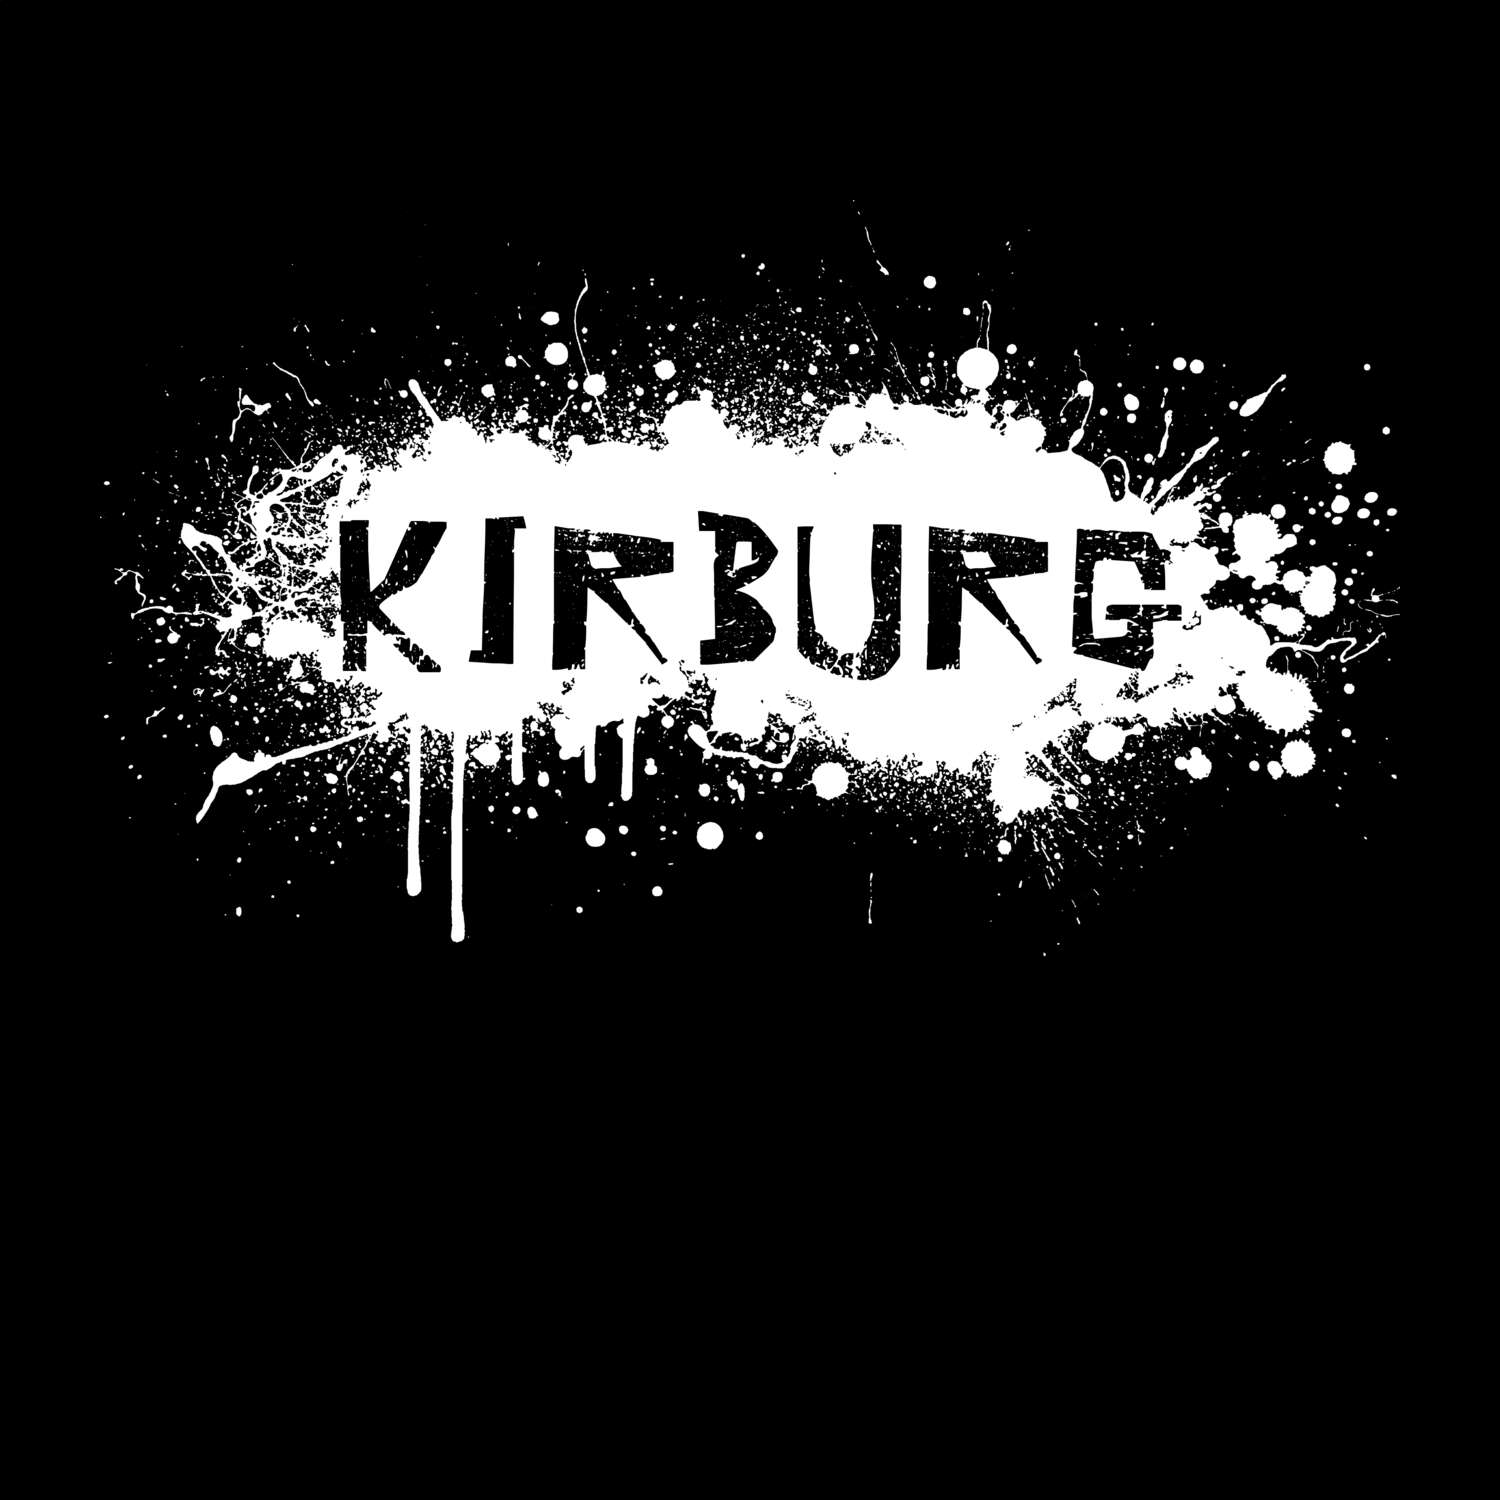 Kirburg T-Shirt »Paint Splash Punk«